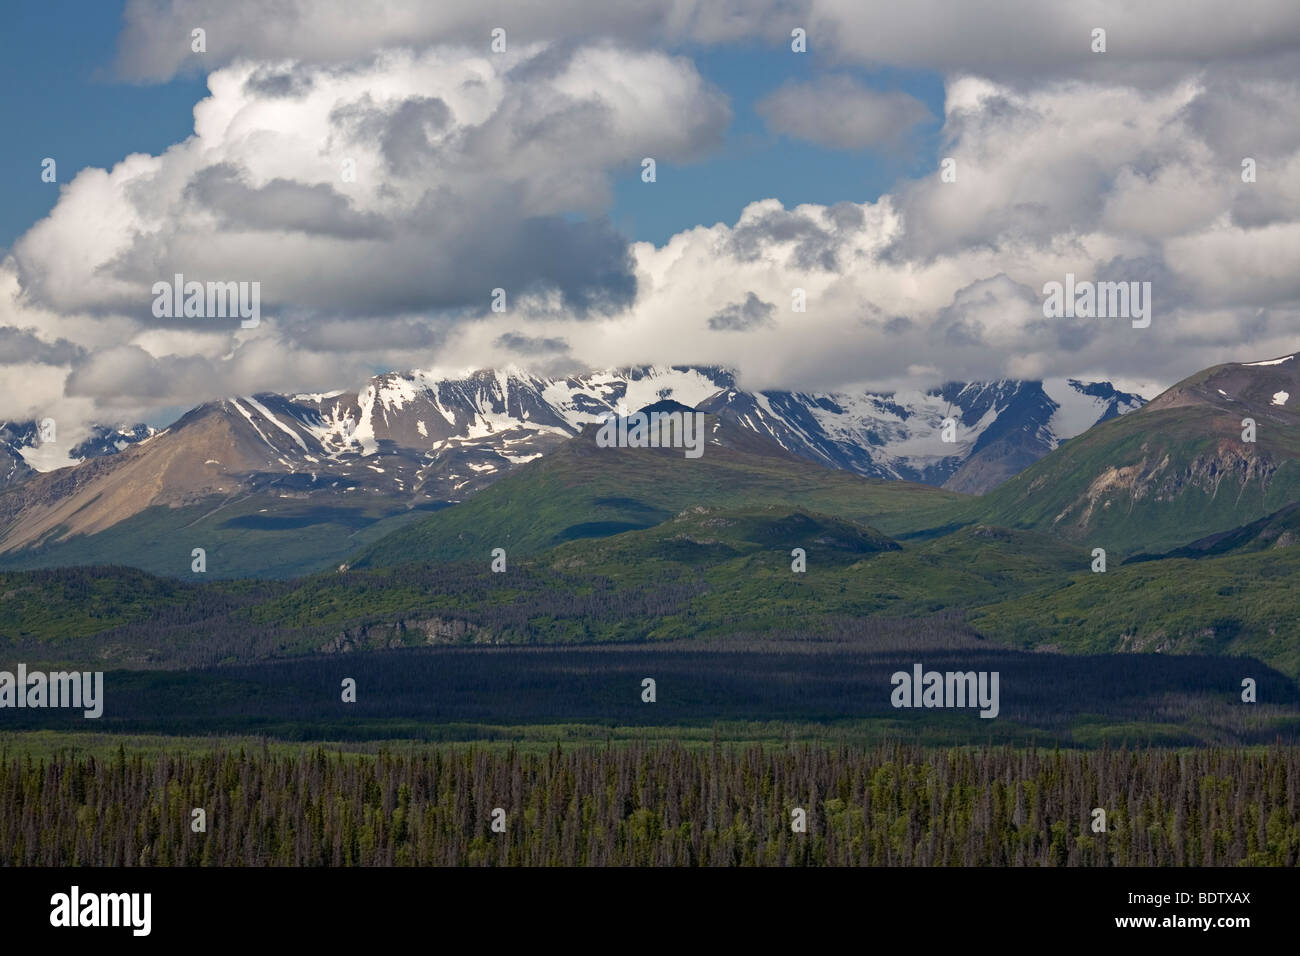 Kluane-Bergkette und Wolken / Kluane-Range and clouds / Kluane-Nationalpark - Kanada Stock Photo